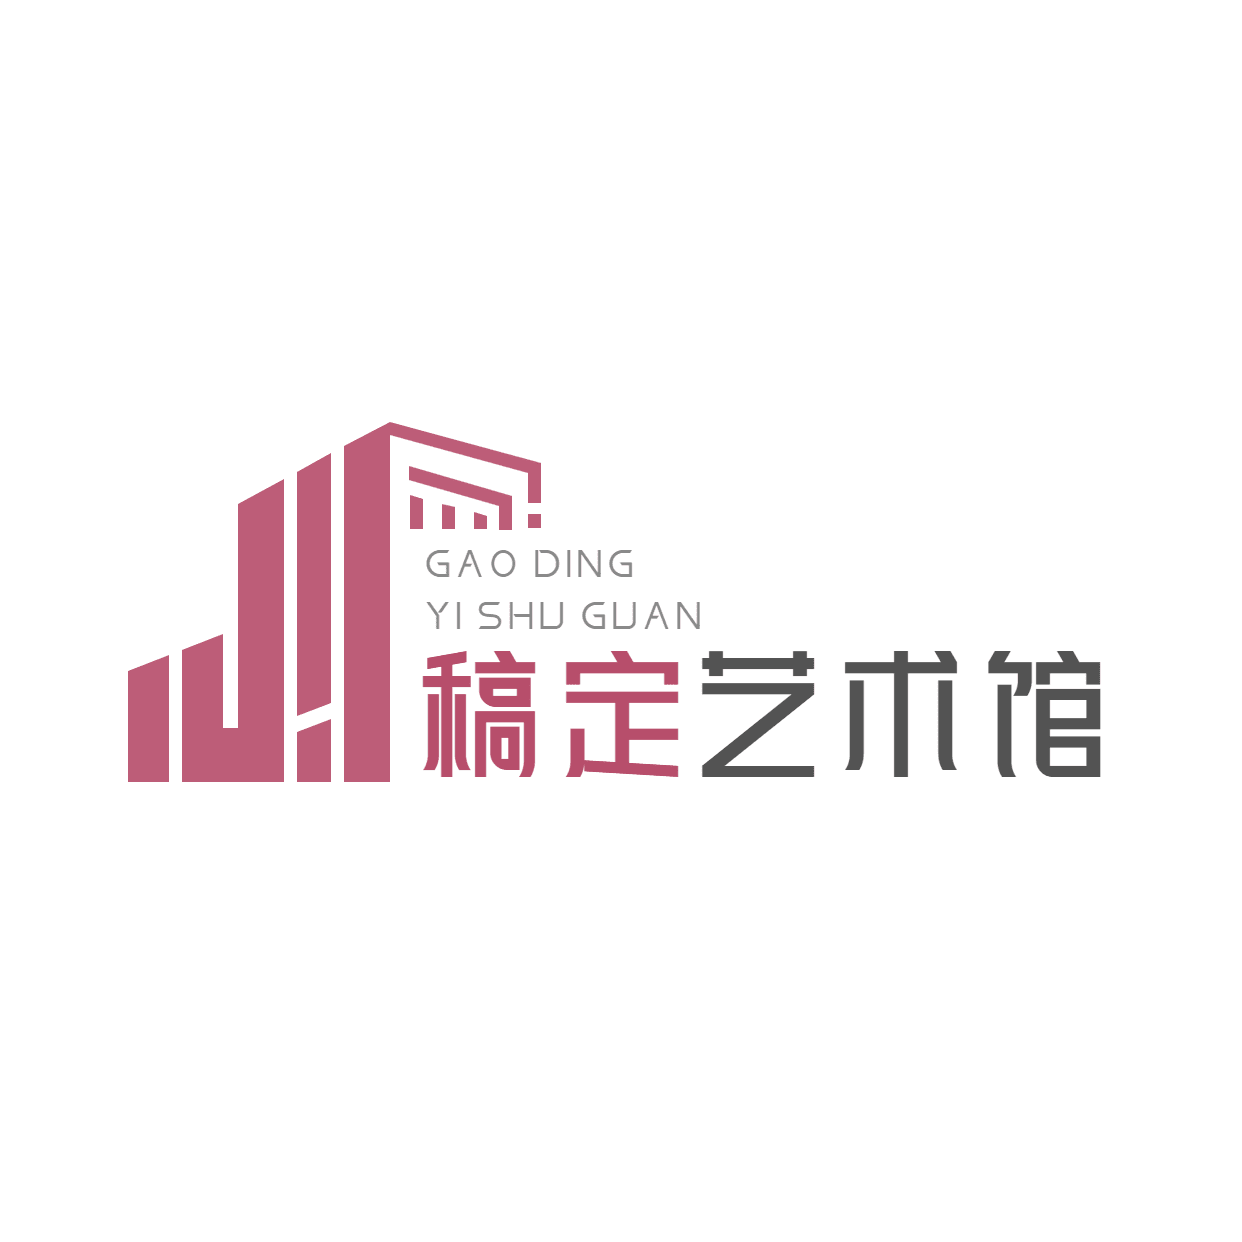 艺术馆艺术展建筑logo设计